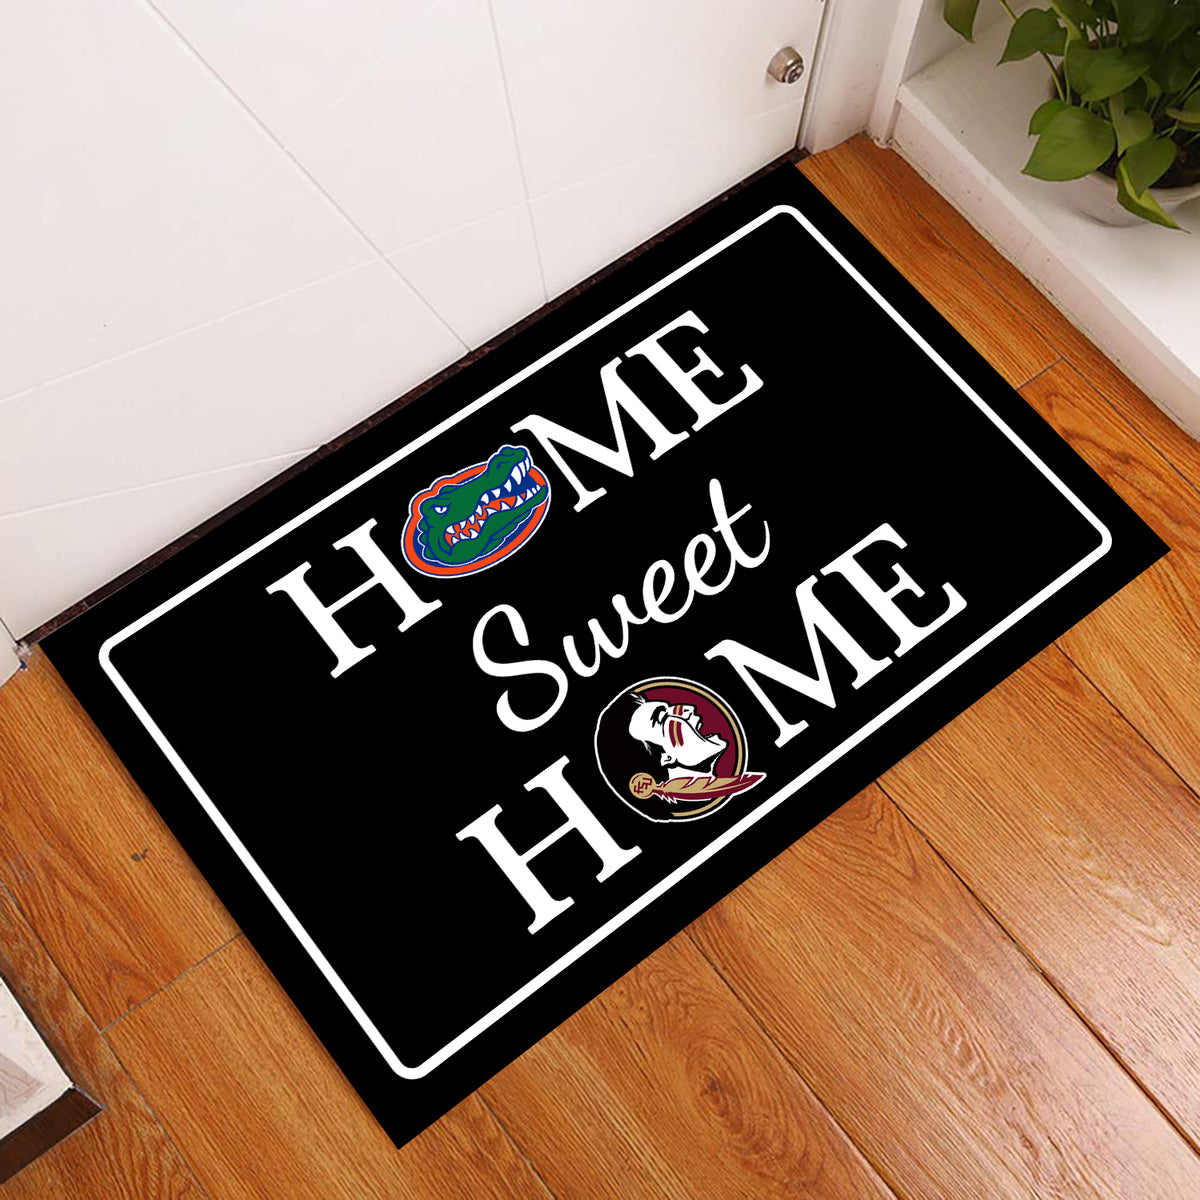 Home Sweet Home - Customized Doormat For Clarice E. Johnston - Anti Slip Indoor Doormat